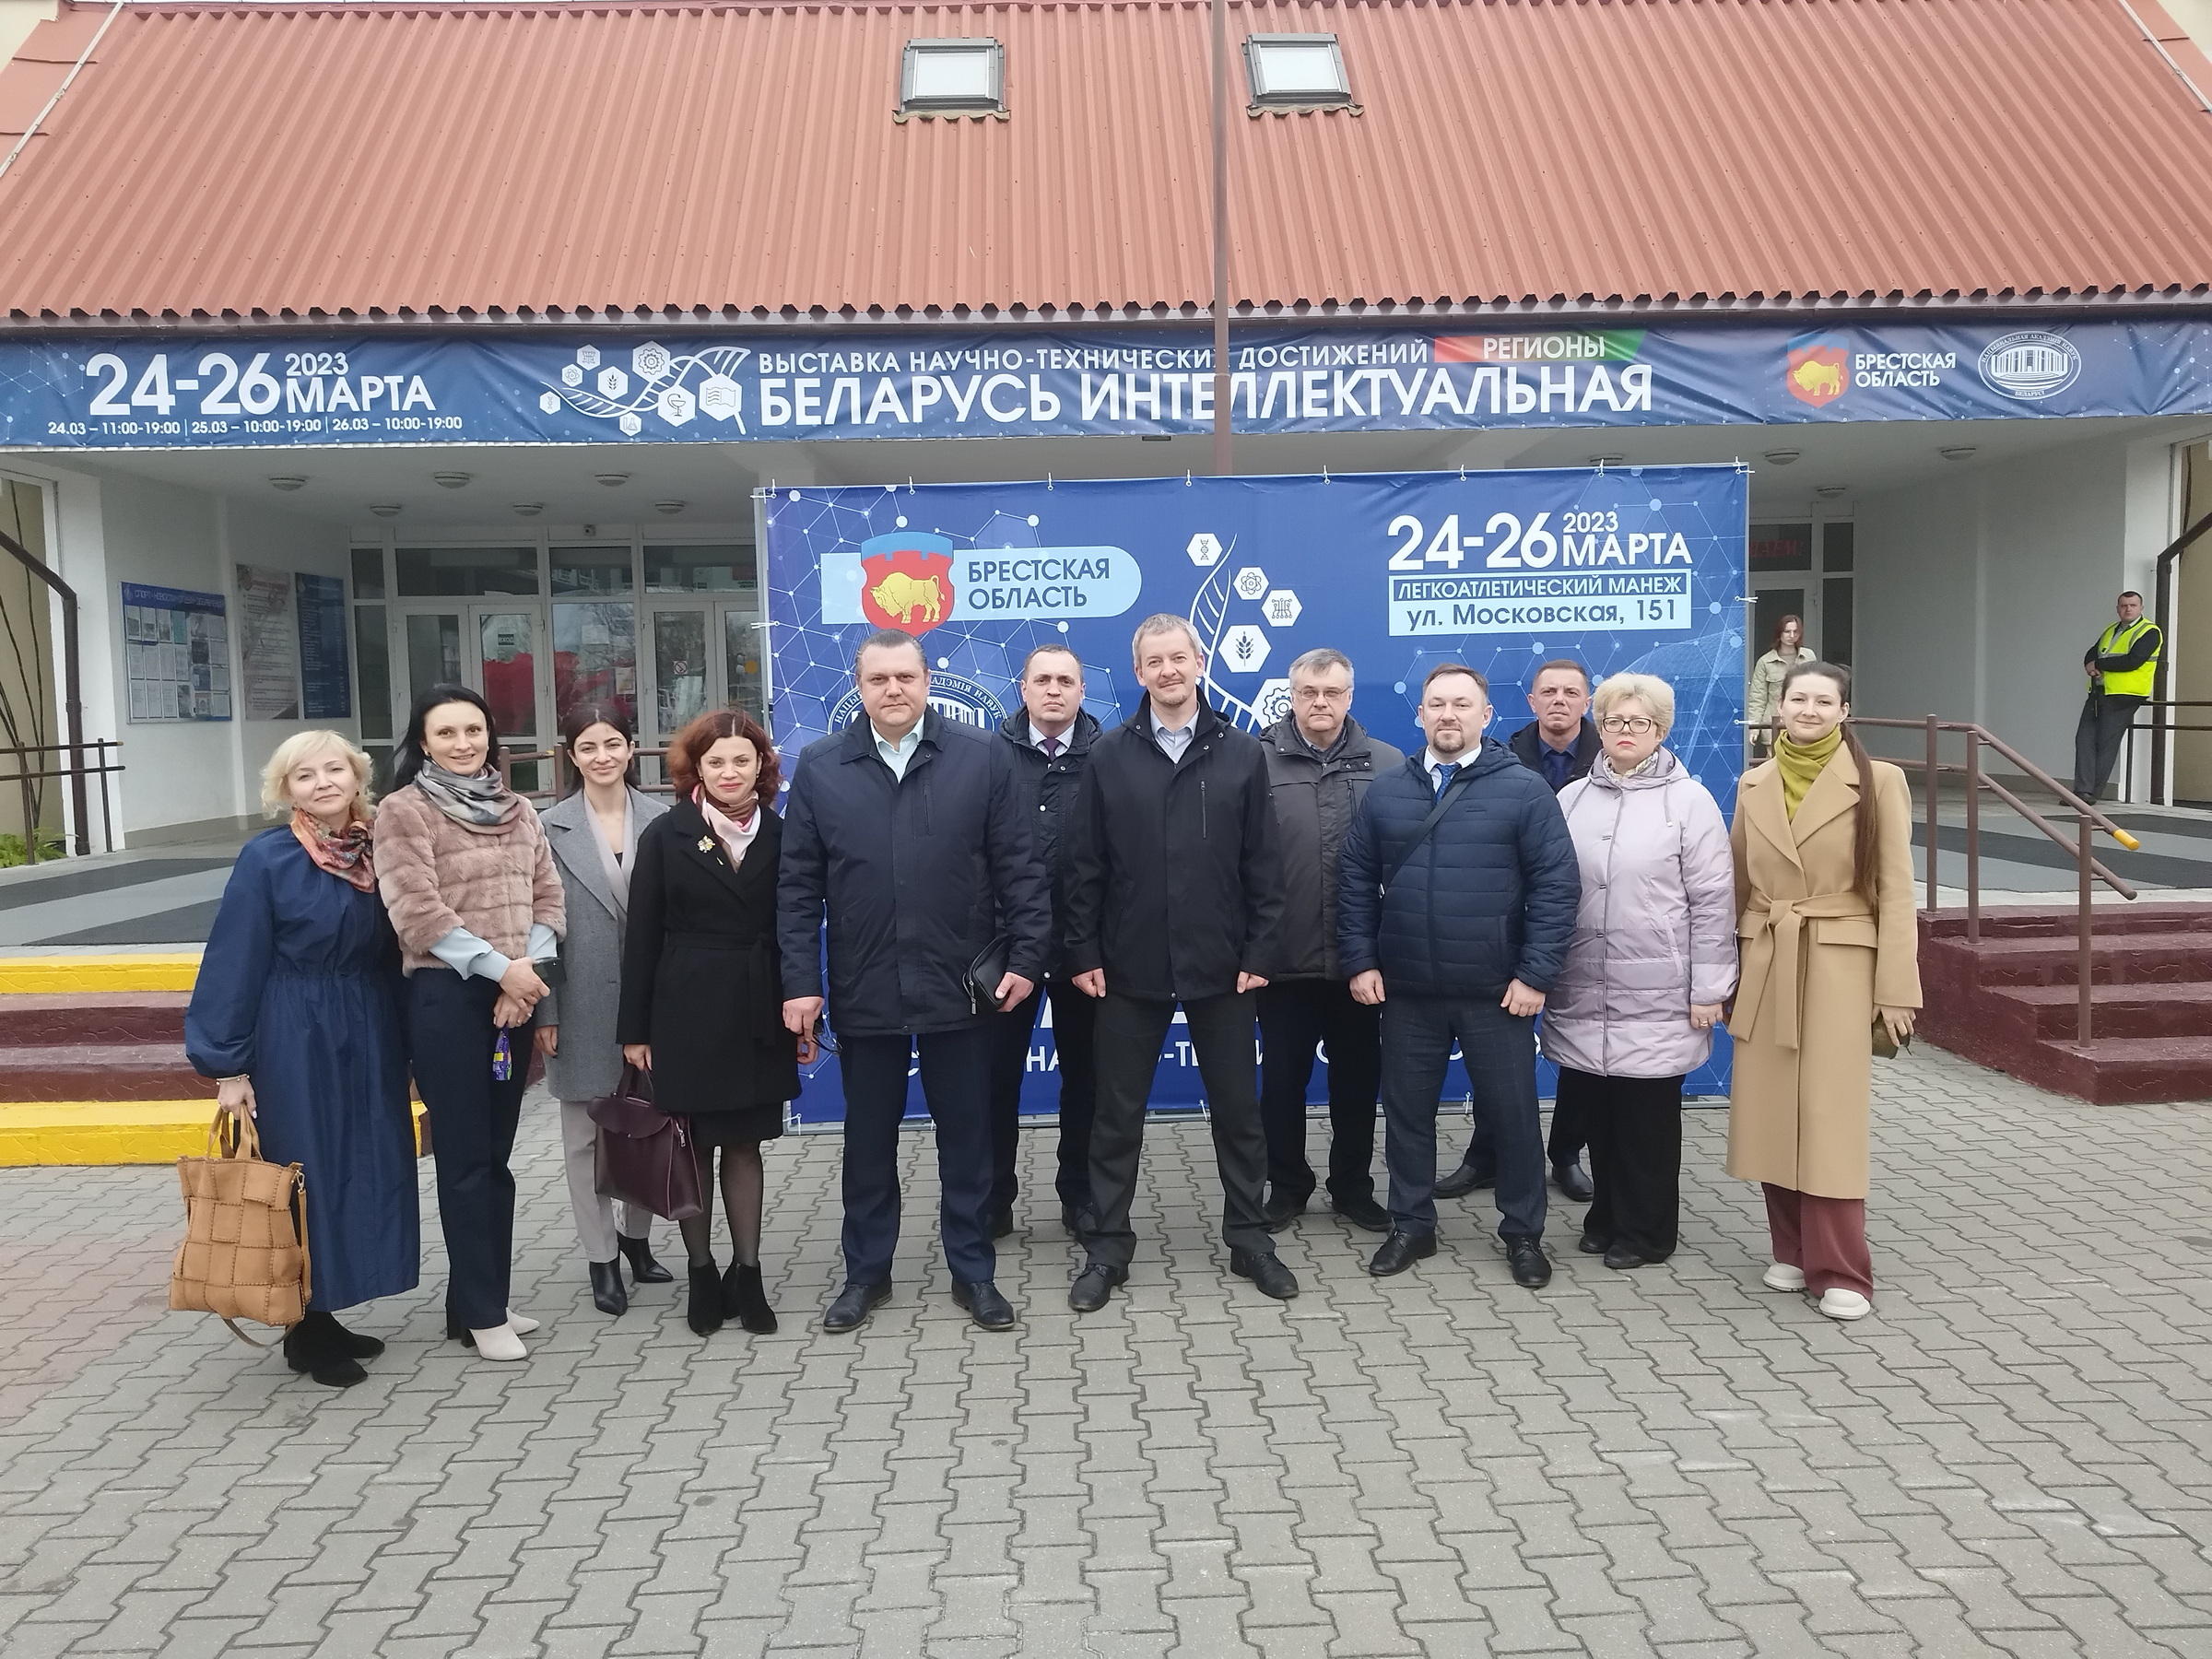 Работники Комитета госконтроля Брестской области посетили выставку «Беларусь интеллектуальная»